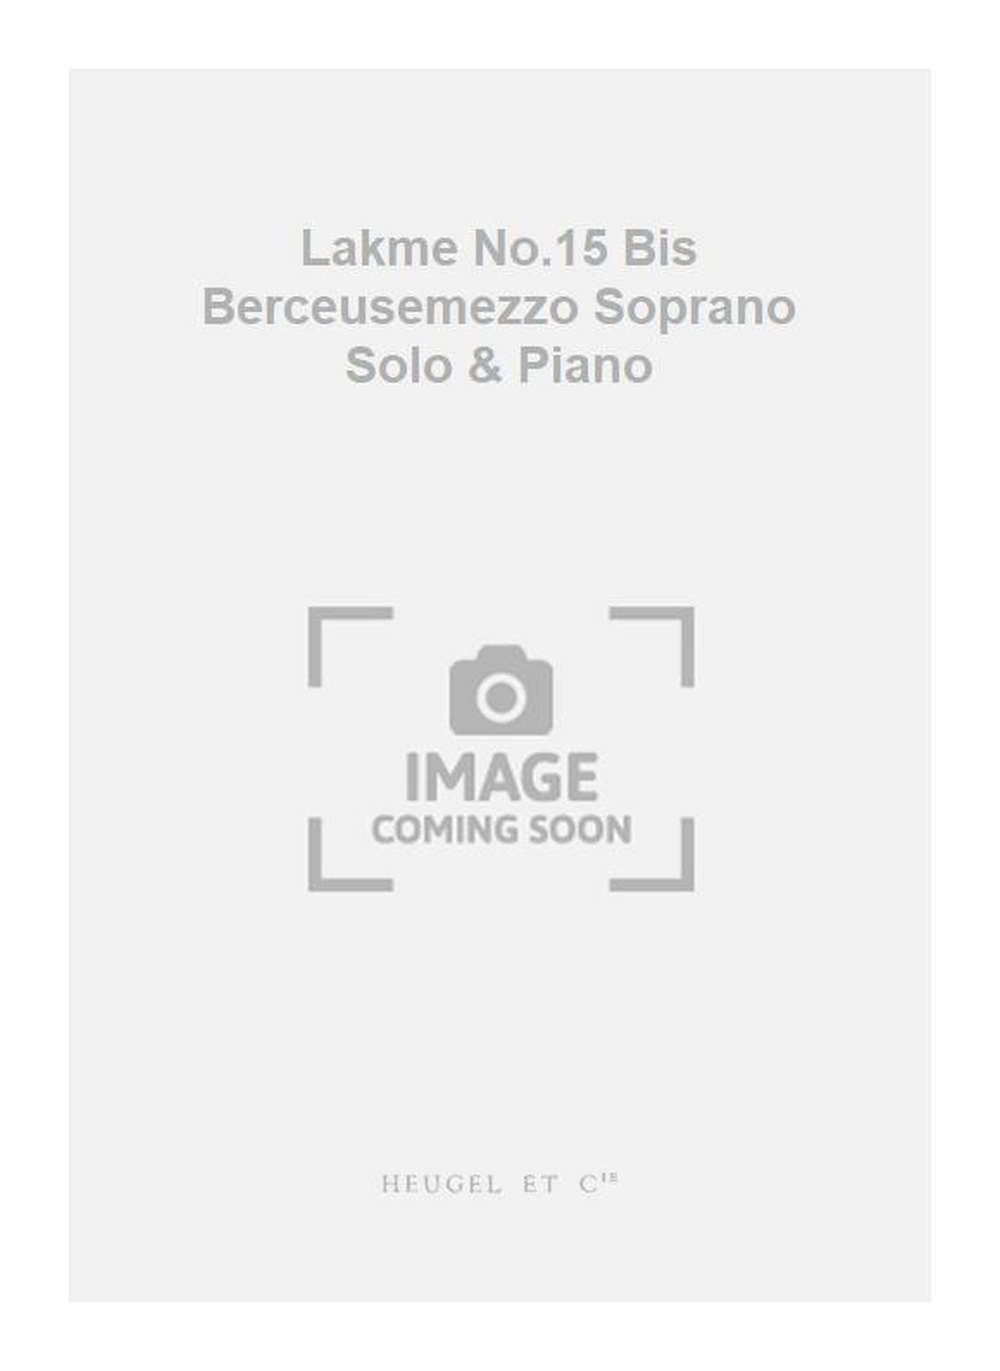 Lo Delibes: Lakme No.15 Bis Berceusemezzo Soprano Solo & Piano